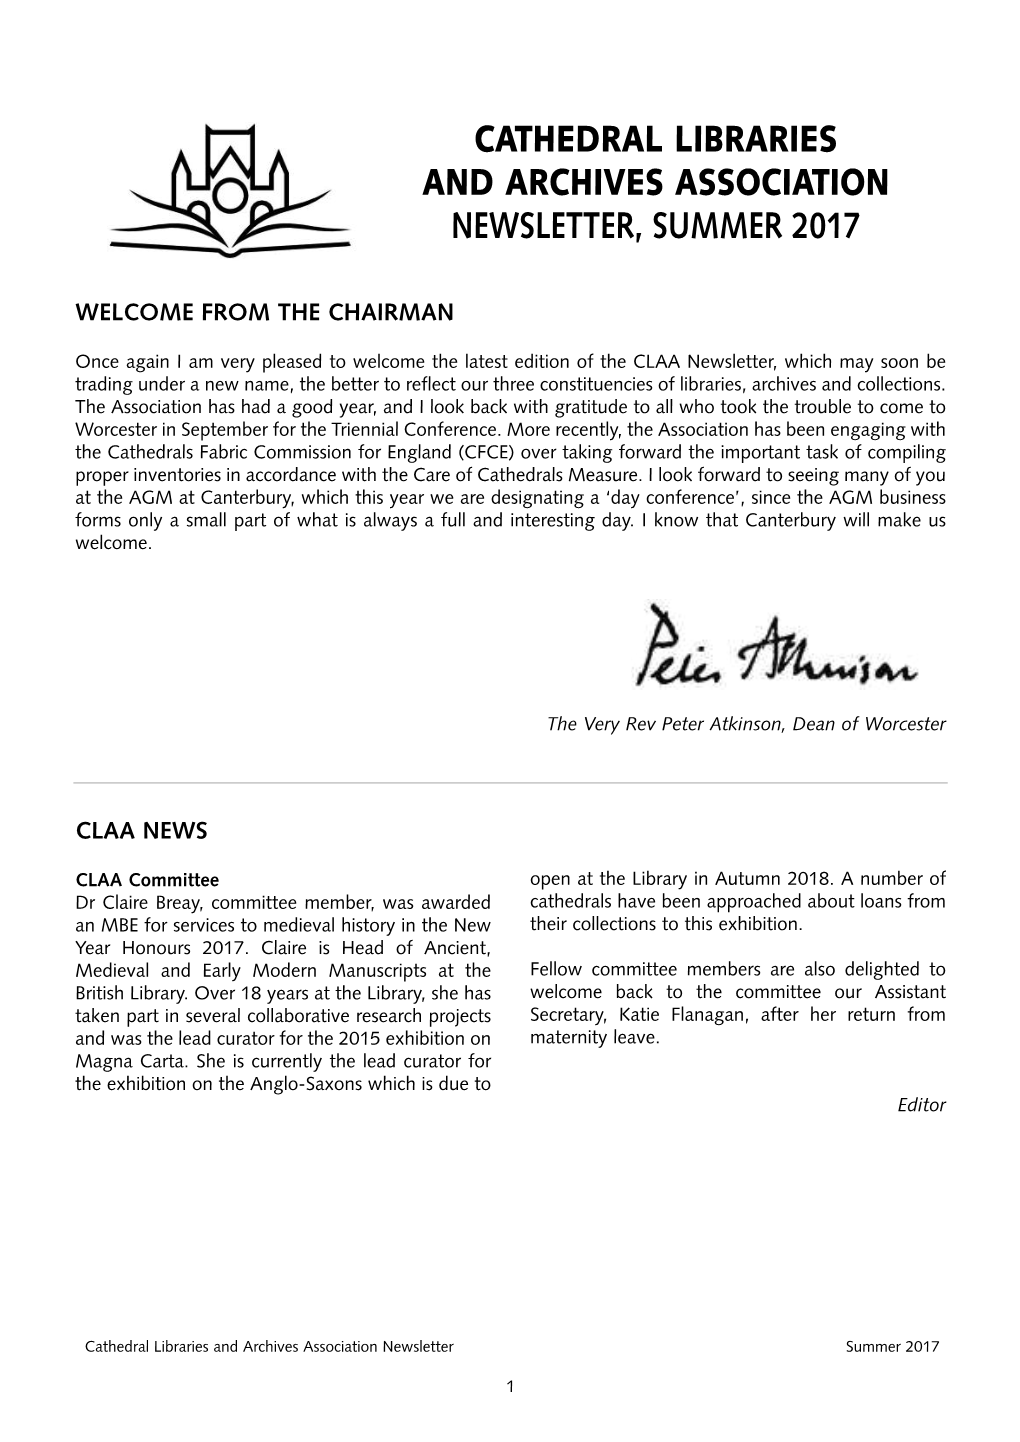 CLAA Newsletter – Summer 2017